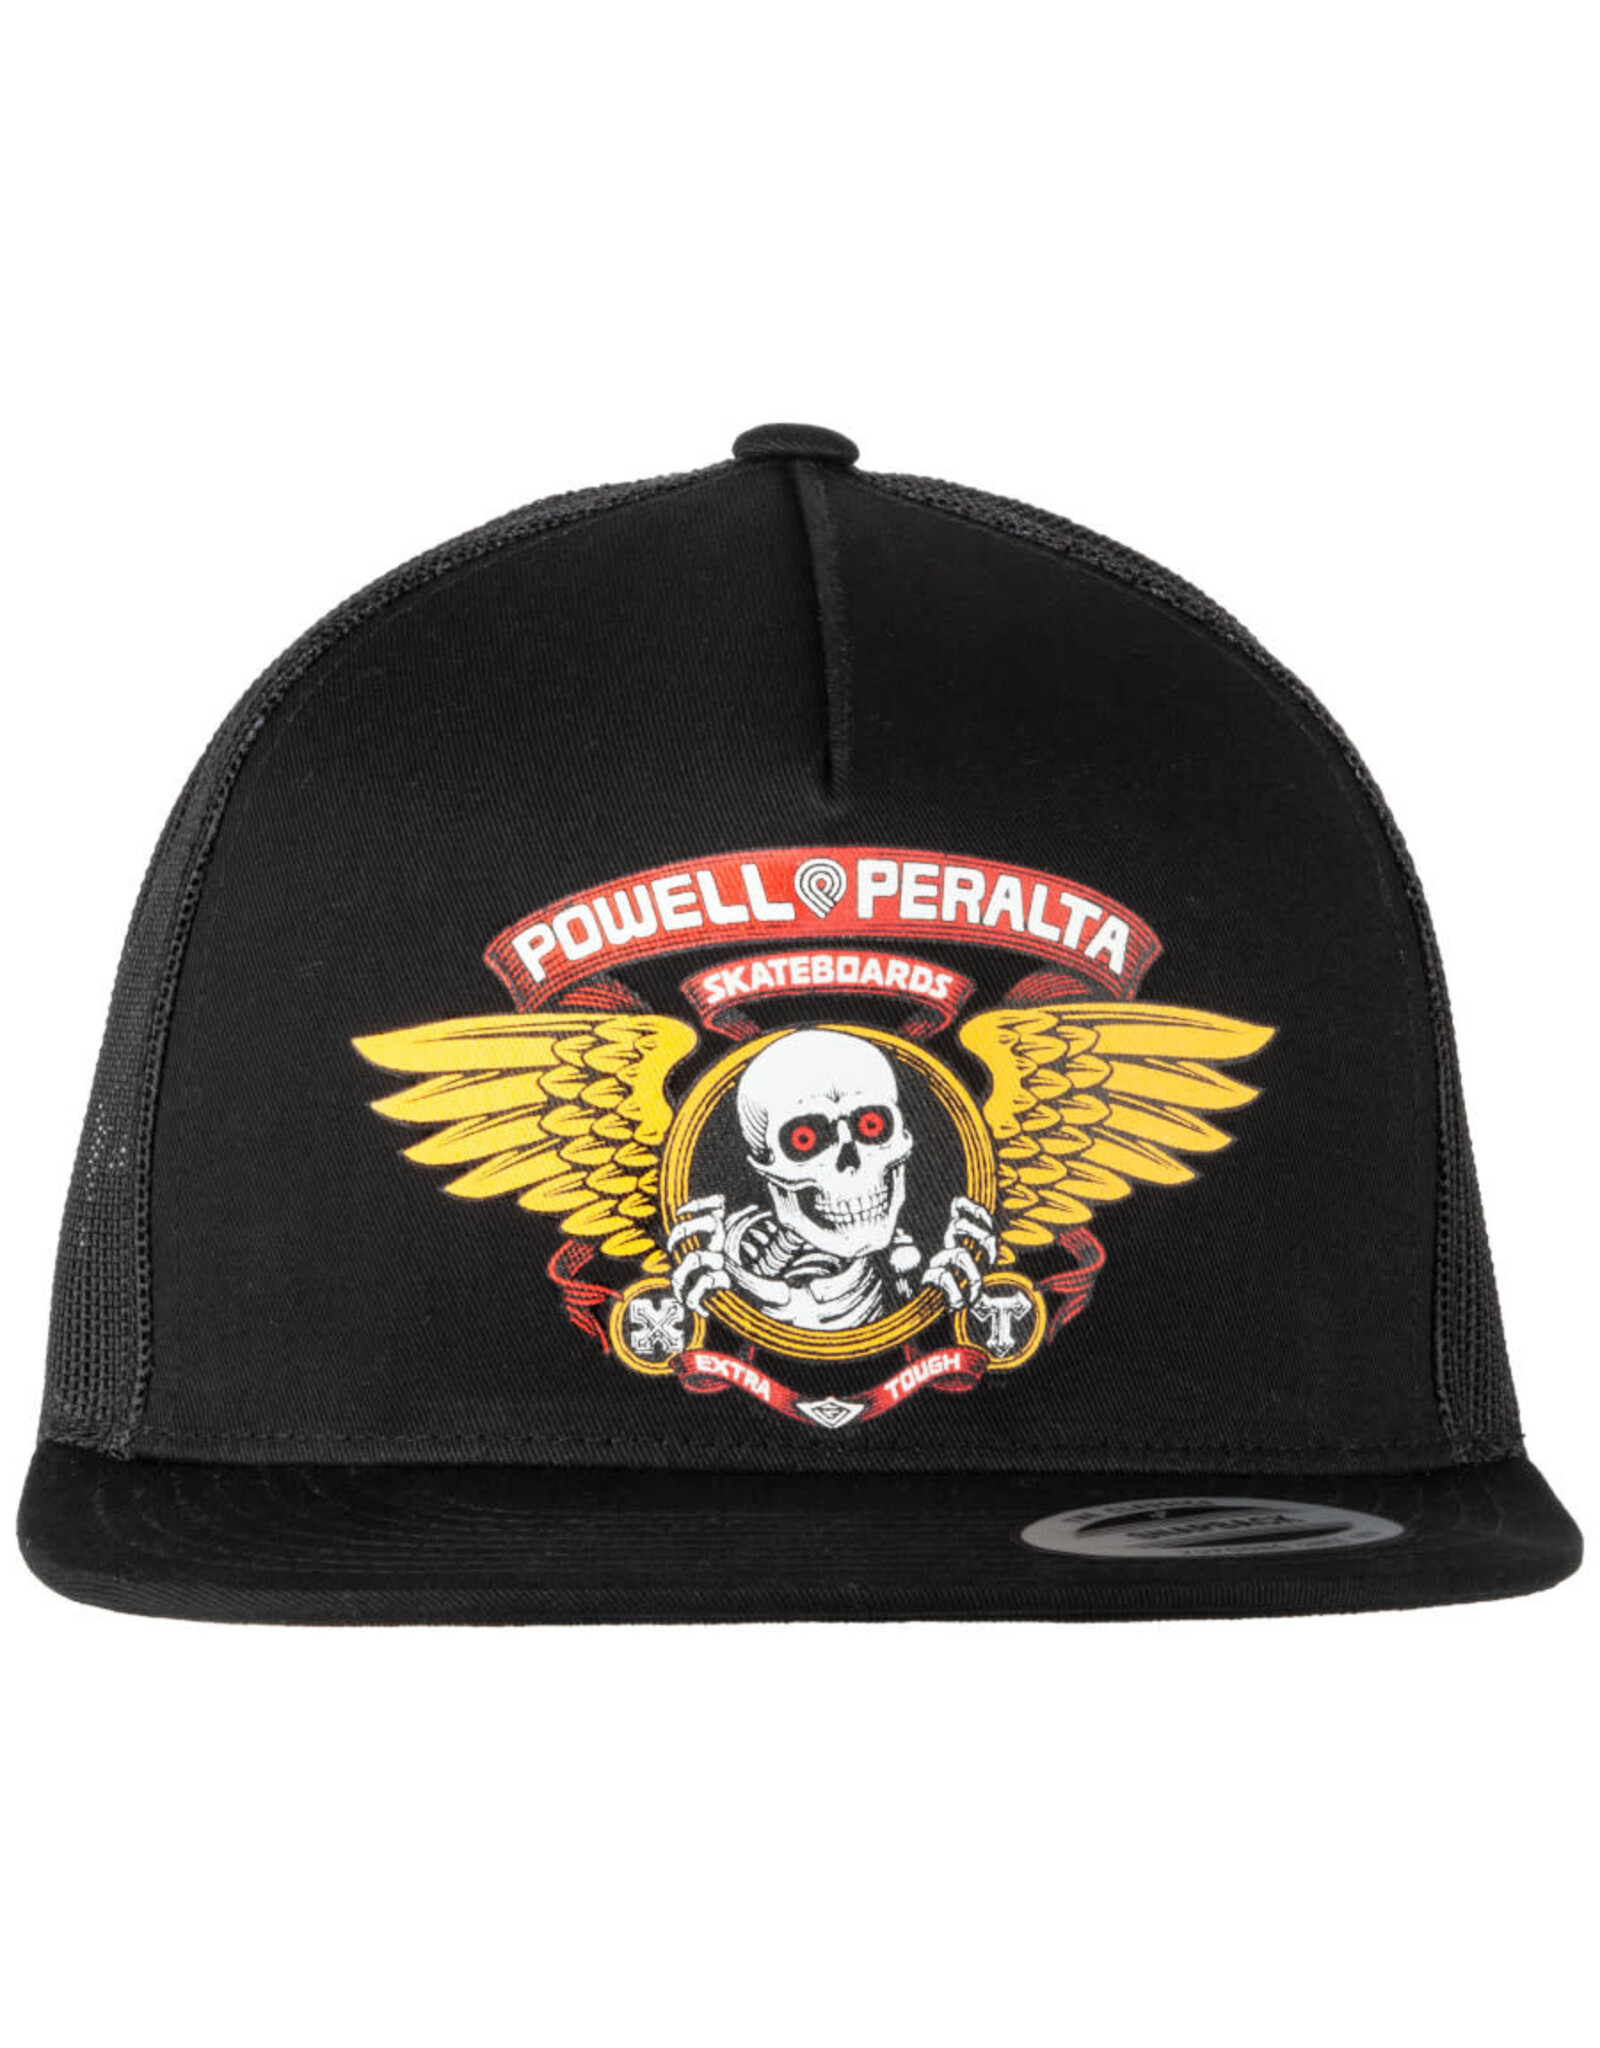 Powell Peralta Powell Peralta Hat Winged Ripper Trucker Snapback (Black)